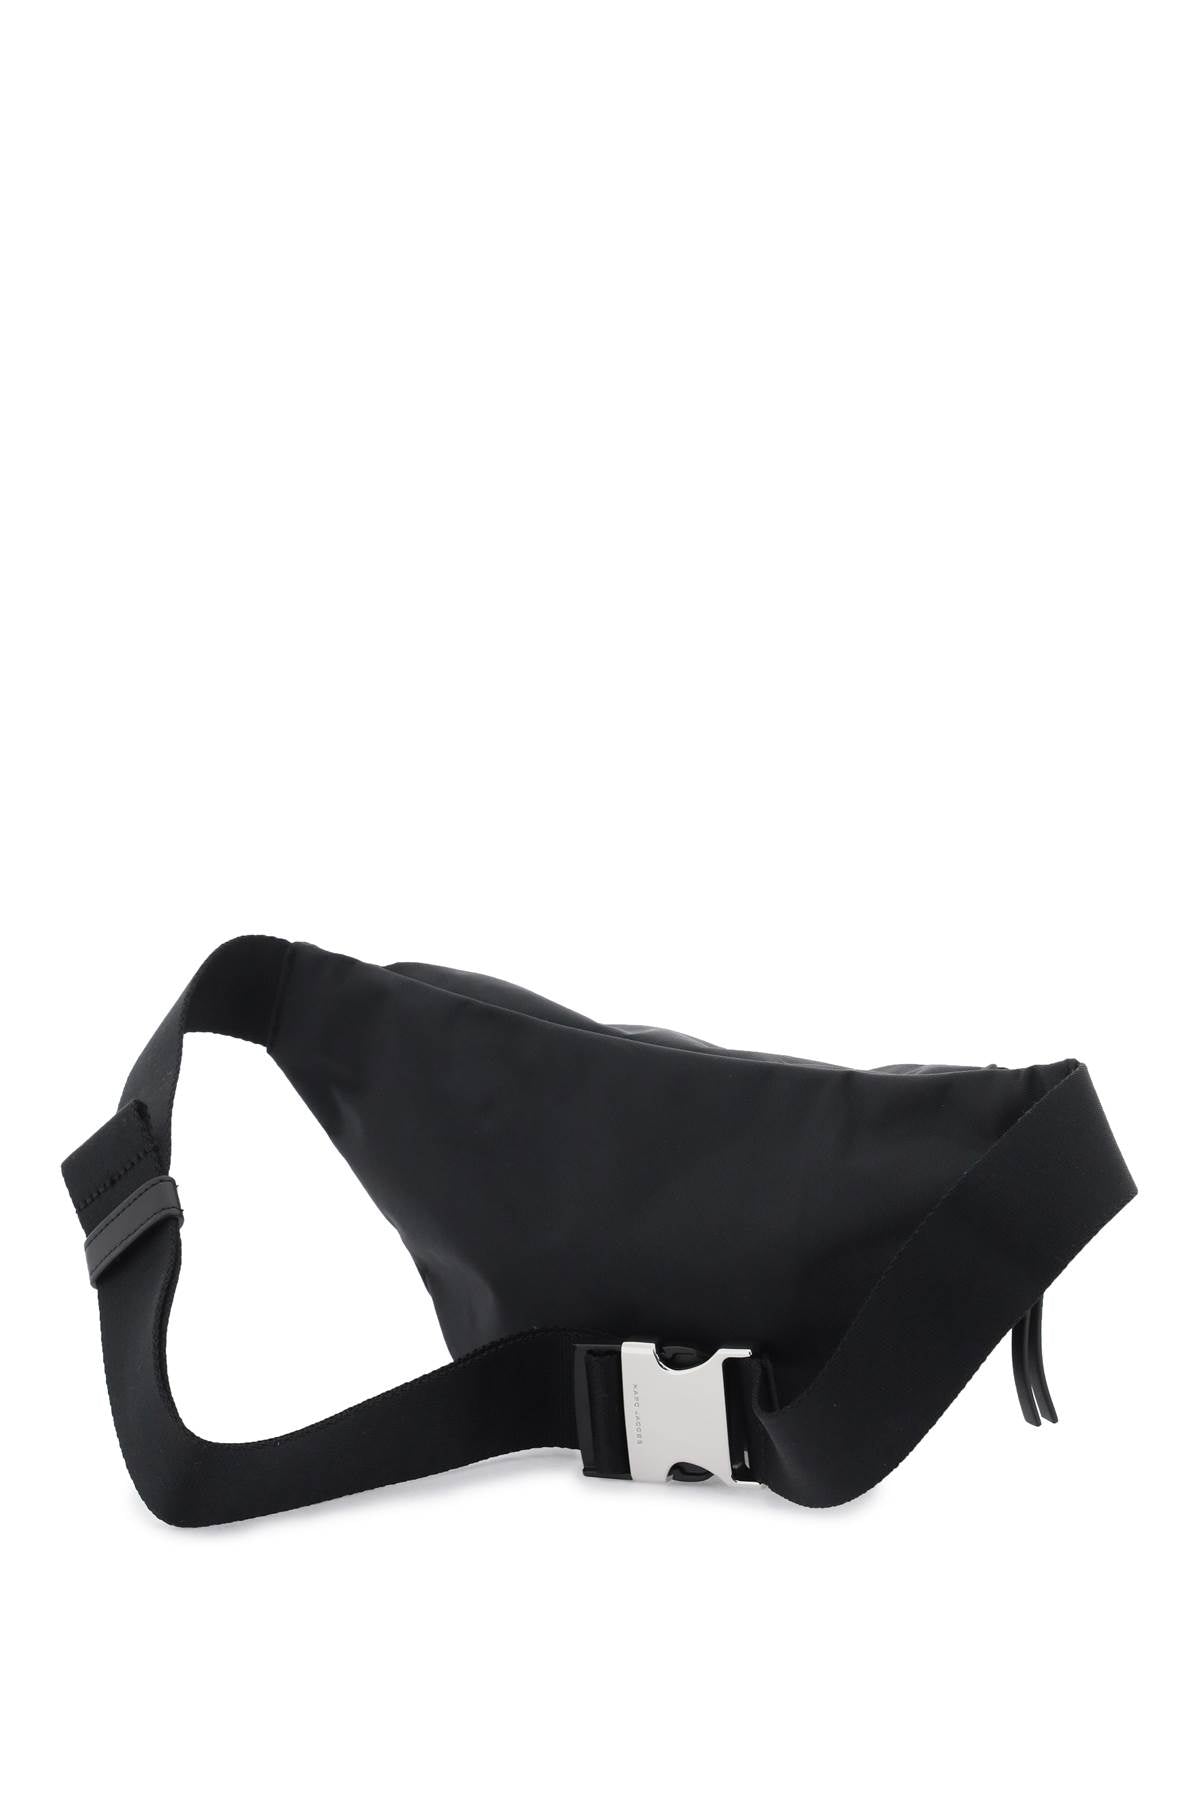 Marc Jacobs The Biker Nylon Belt Bag   Black